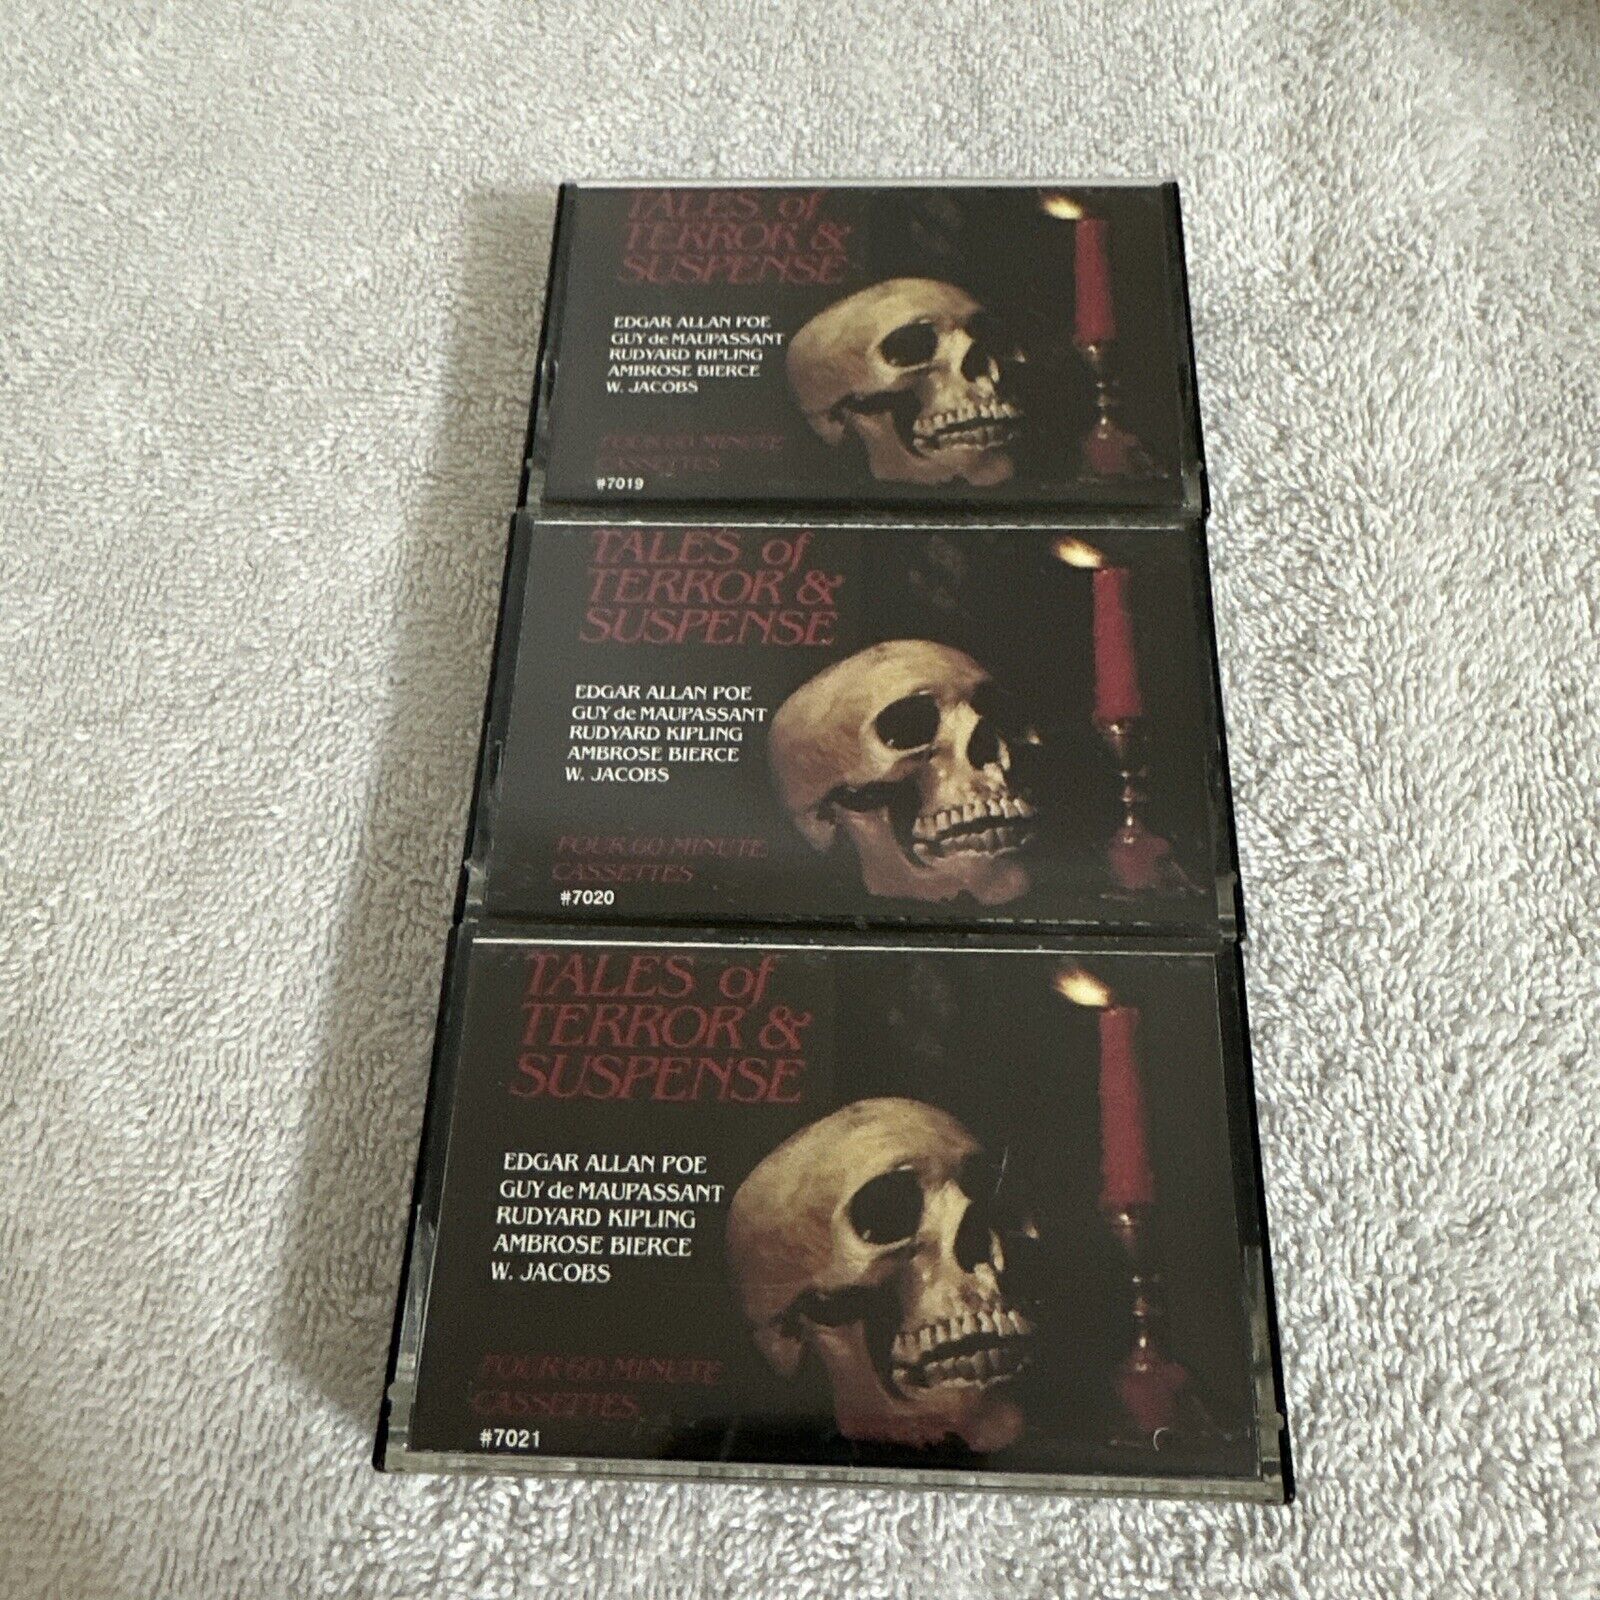 VTG Halloween Tales of Horror & Suspense Cassette Tapes Lot/Set of 3 Rare